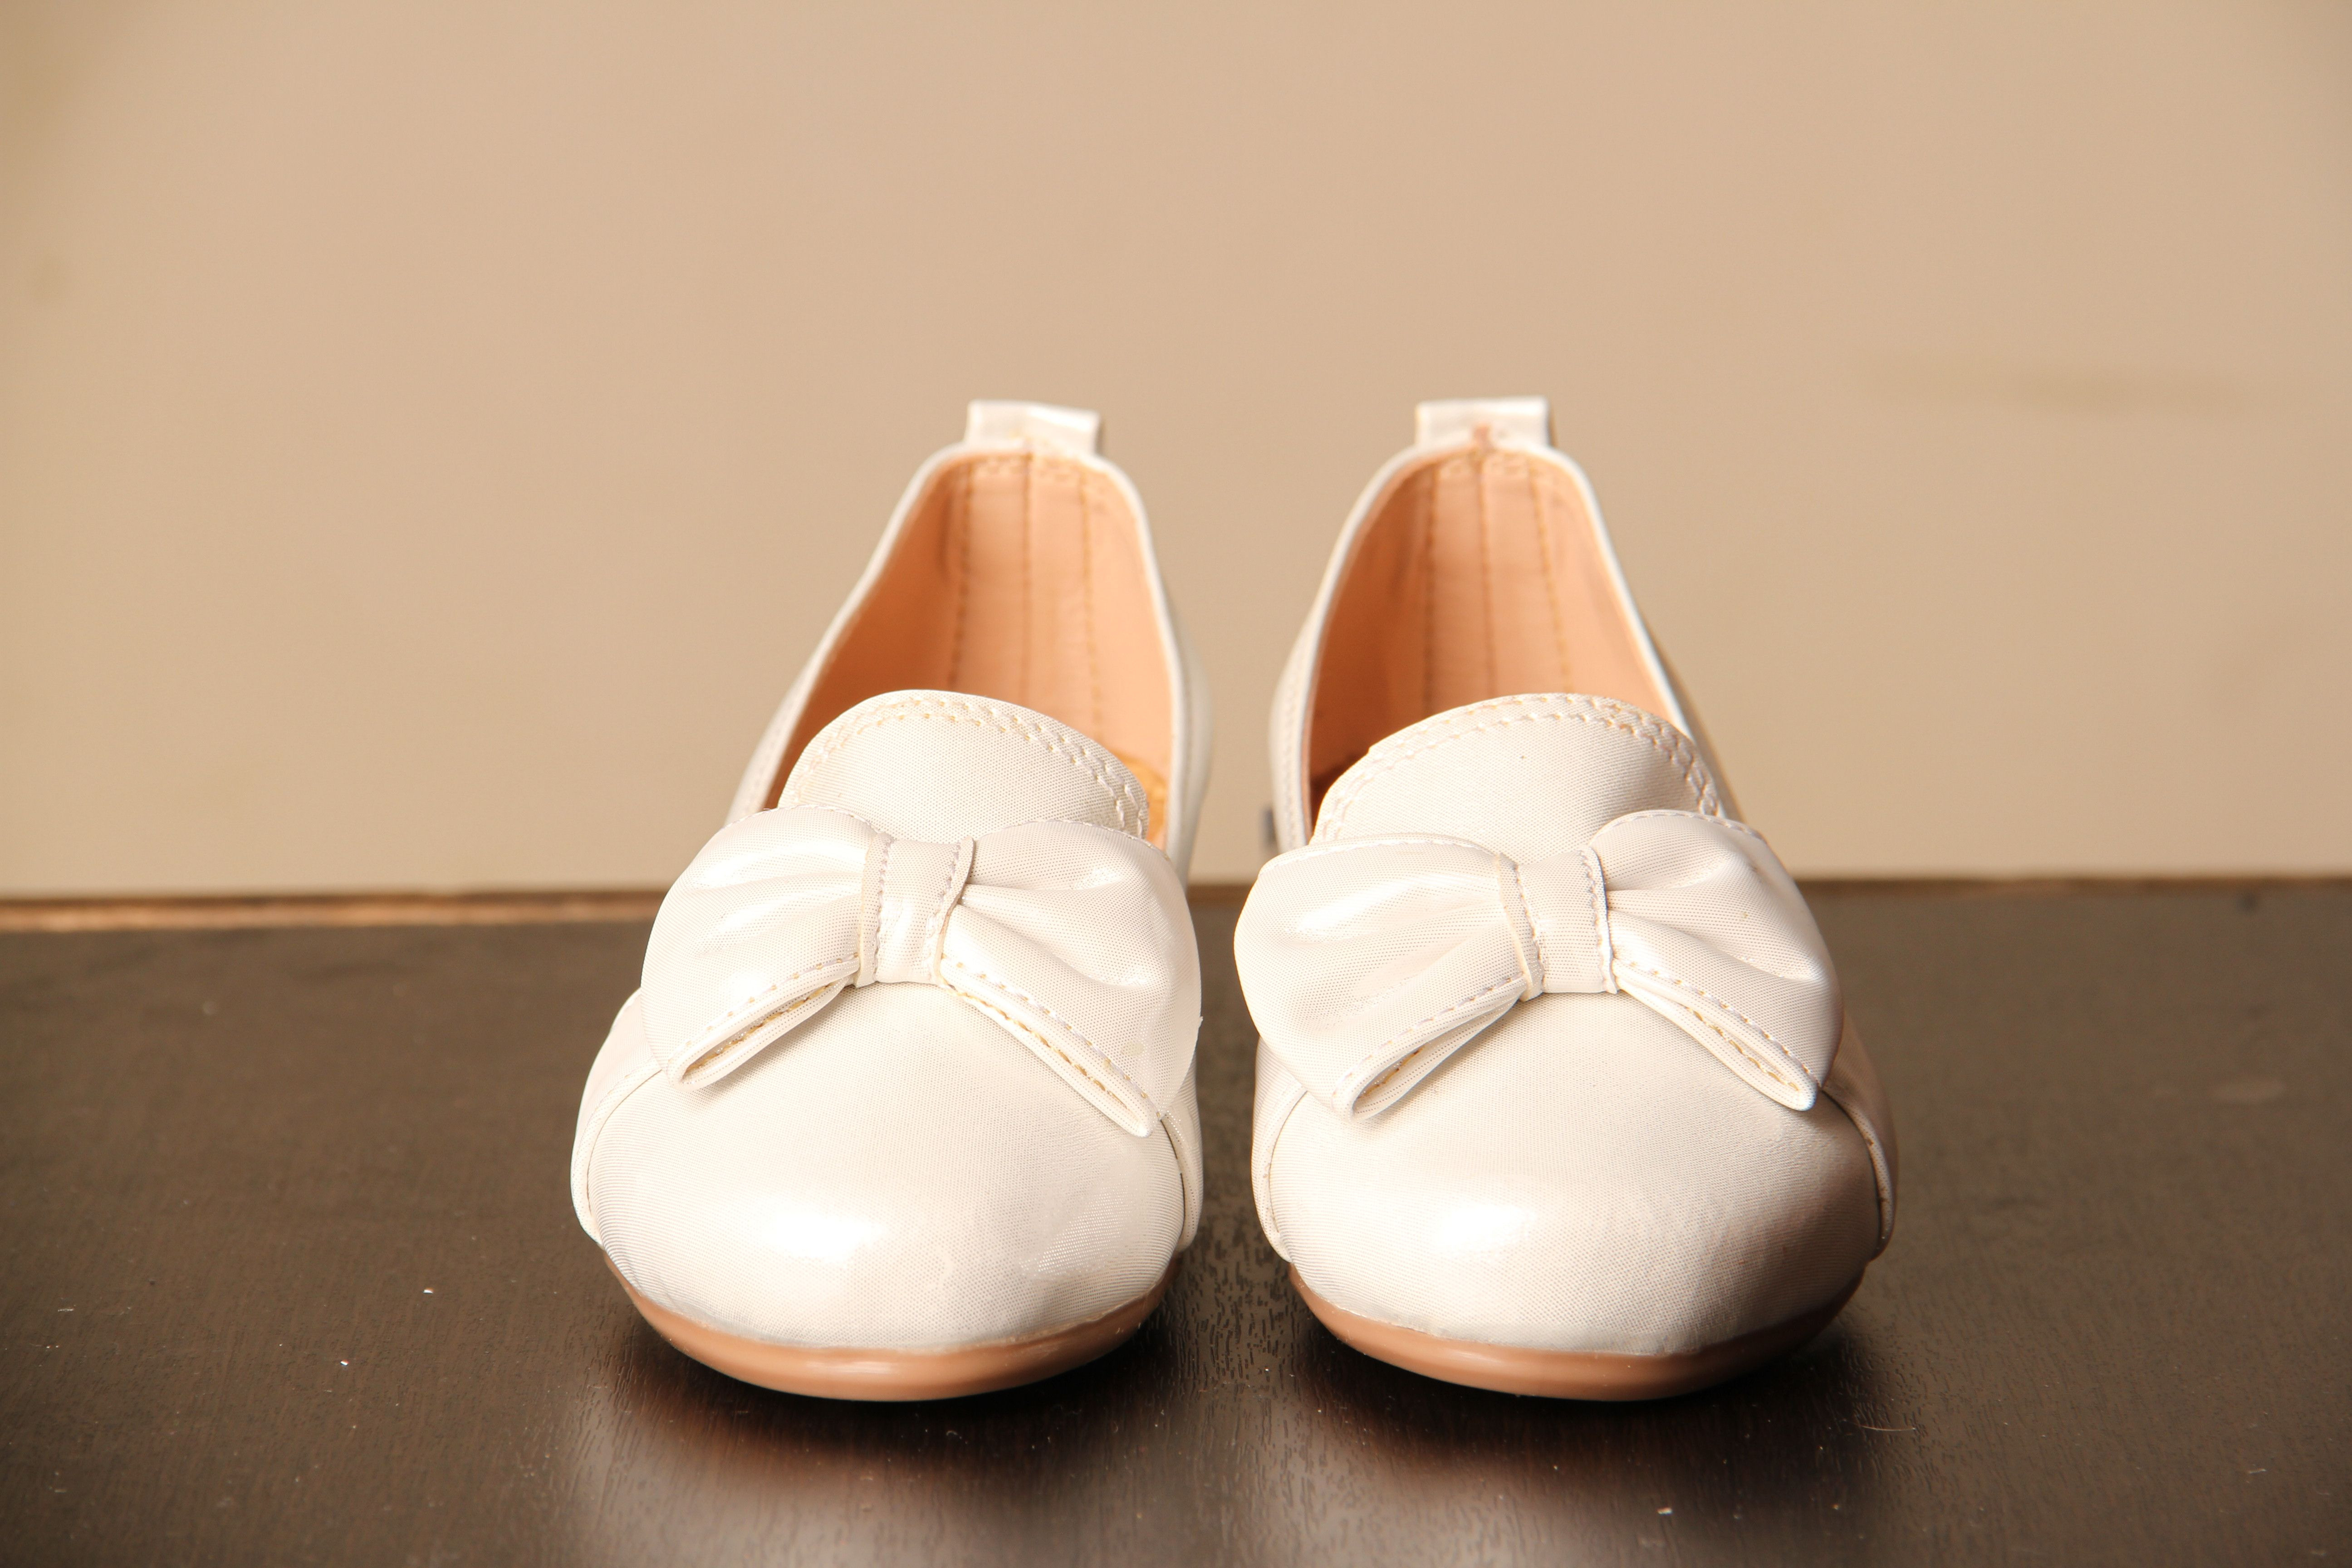 Blancas: Baletas Blancas morita shoes